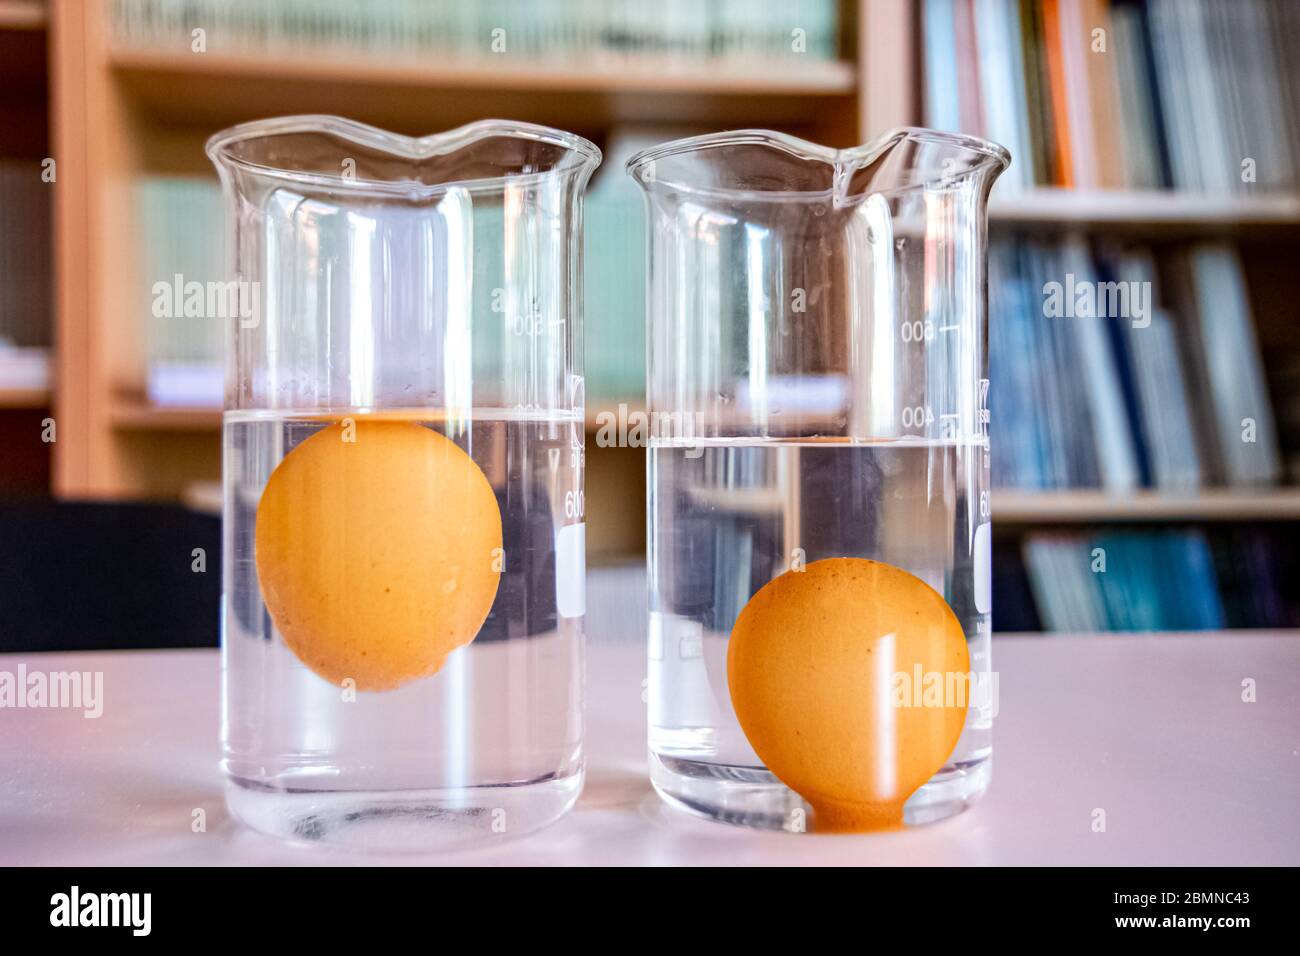 Vaso de precipitado con agua pura y huevo hundido en el interior y vaso de precipitado con agua salada y flotando en el Fotografía de stock - Alamy